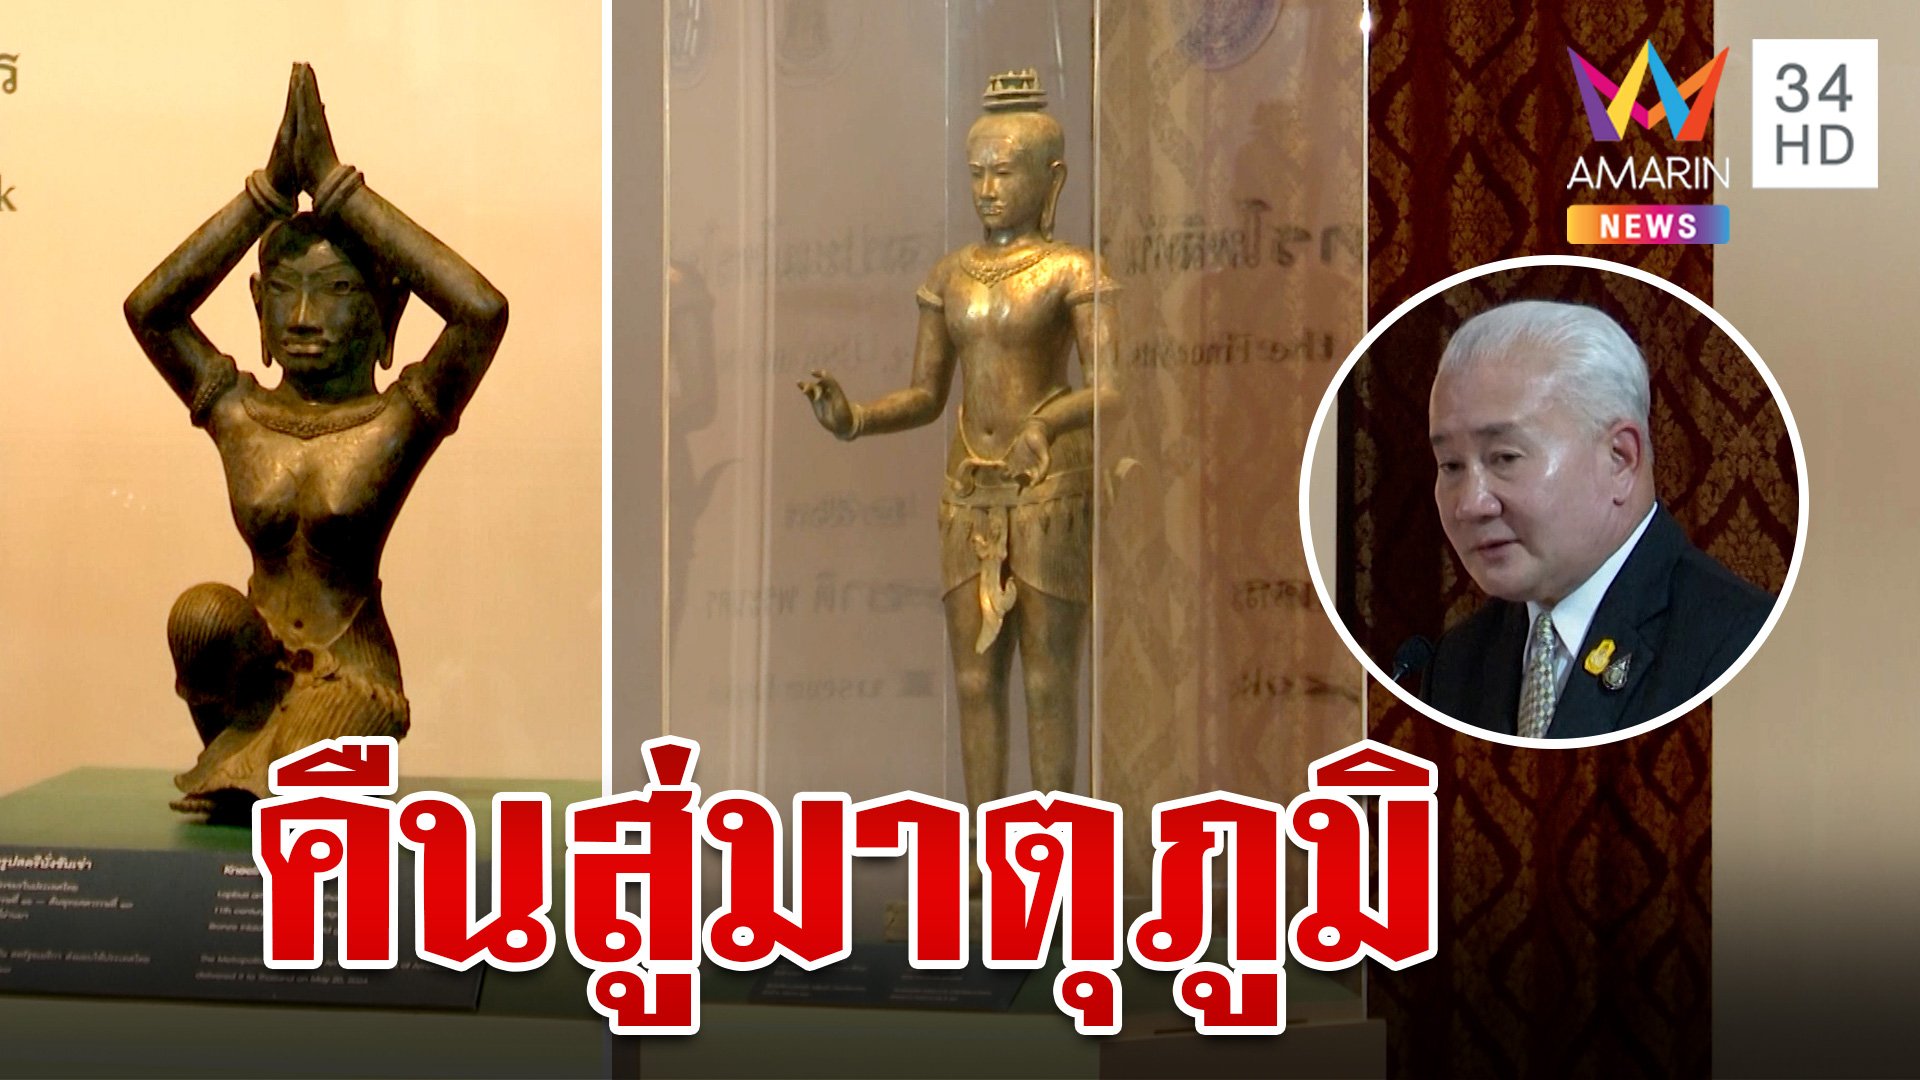 เผยโฉม "Golden Boy" คืนสู่มาตุภูมิ สภาพสมบูรณ์จ่อให้คนไทยได้ชม | ทุบโต๊ะข่าว | 21 พ.ค. 67 | AMARIN TVHD34